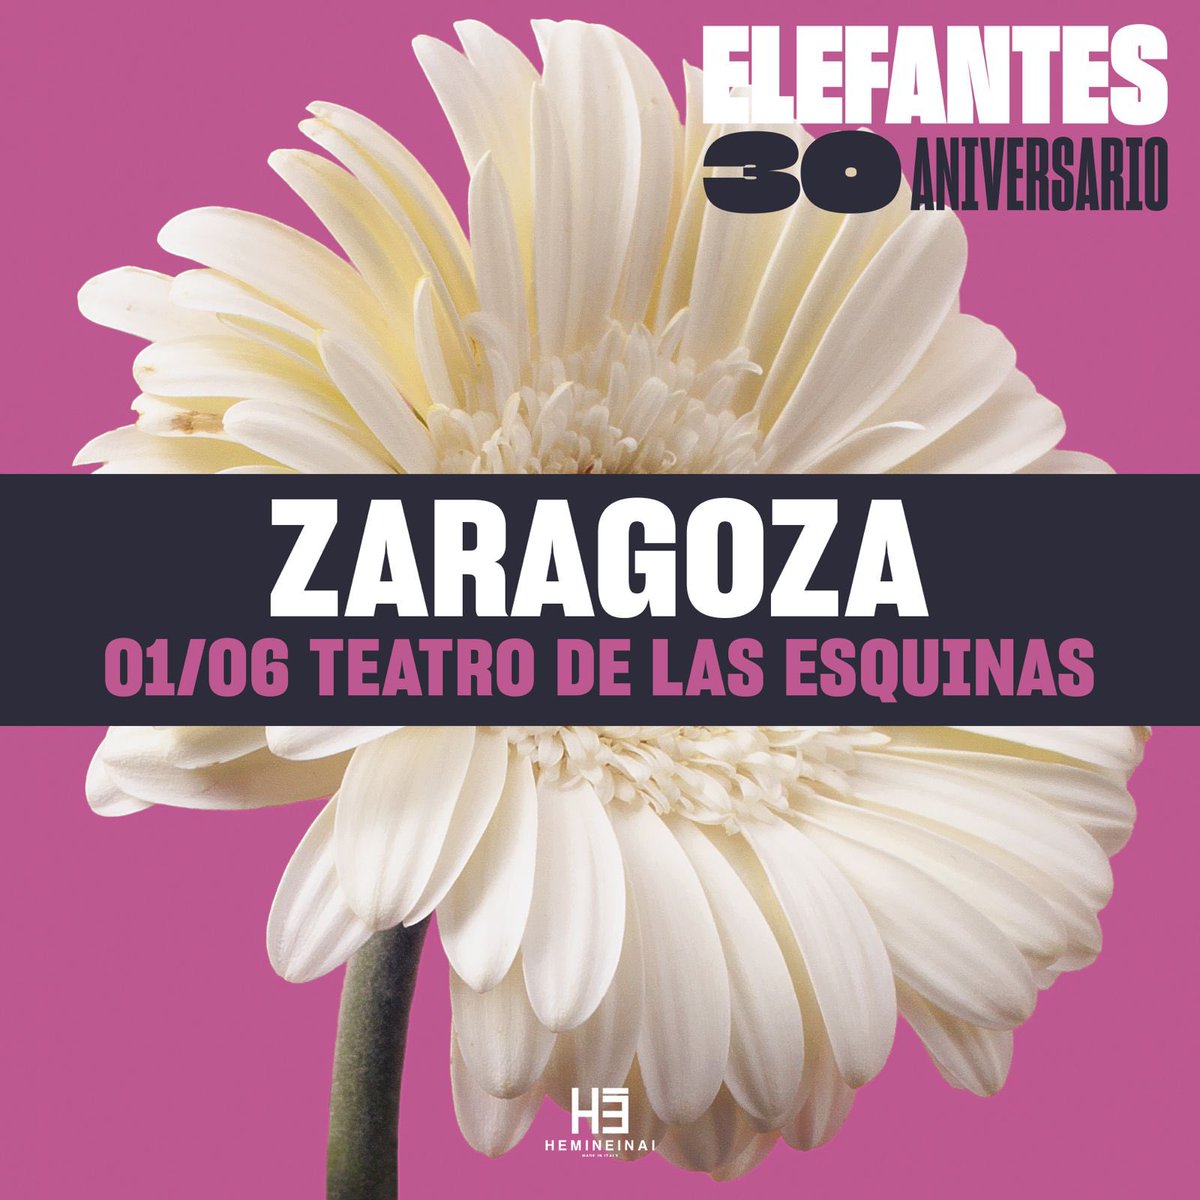 Concierto 30 Aniversario en Zaragoza. 1 de Junio en @TeatroEsquinas Entradas en elefantes.net